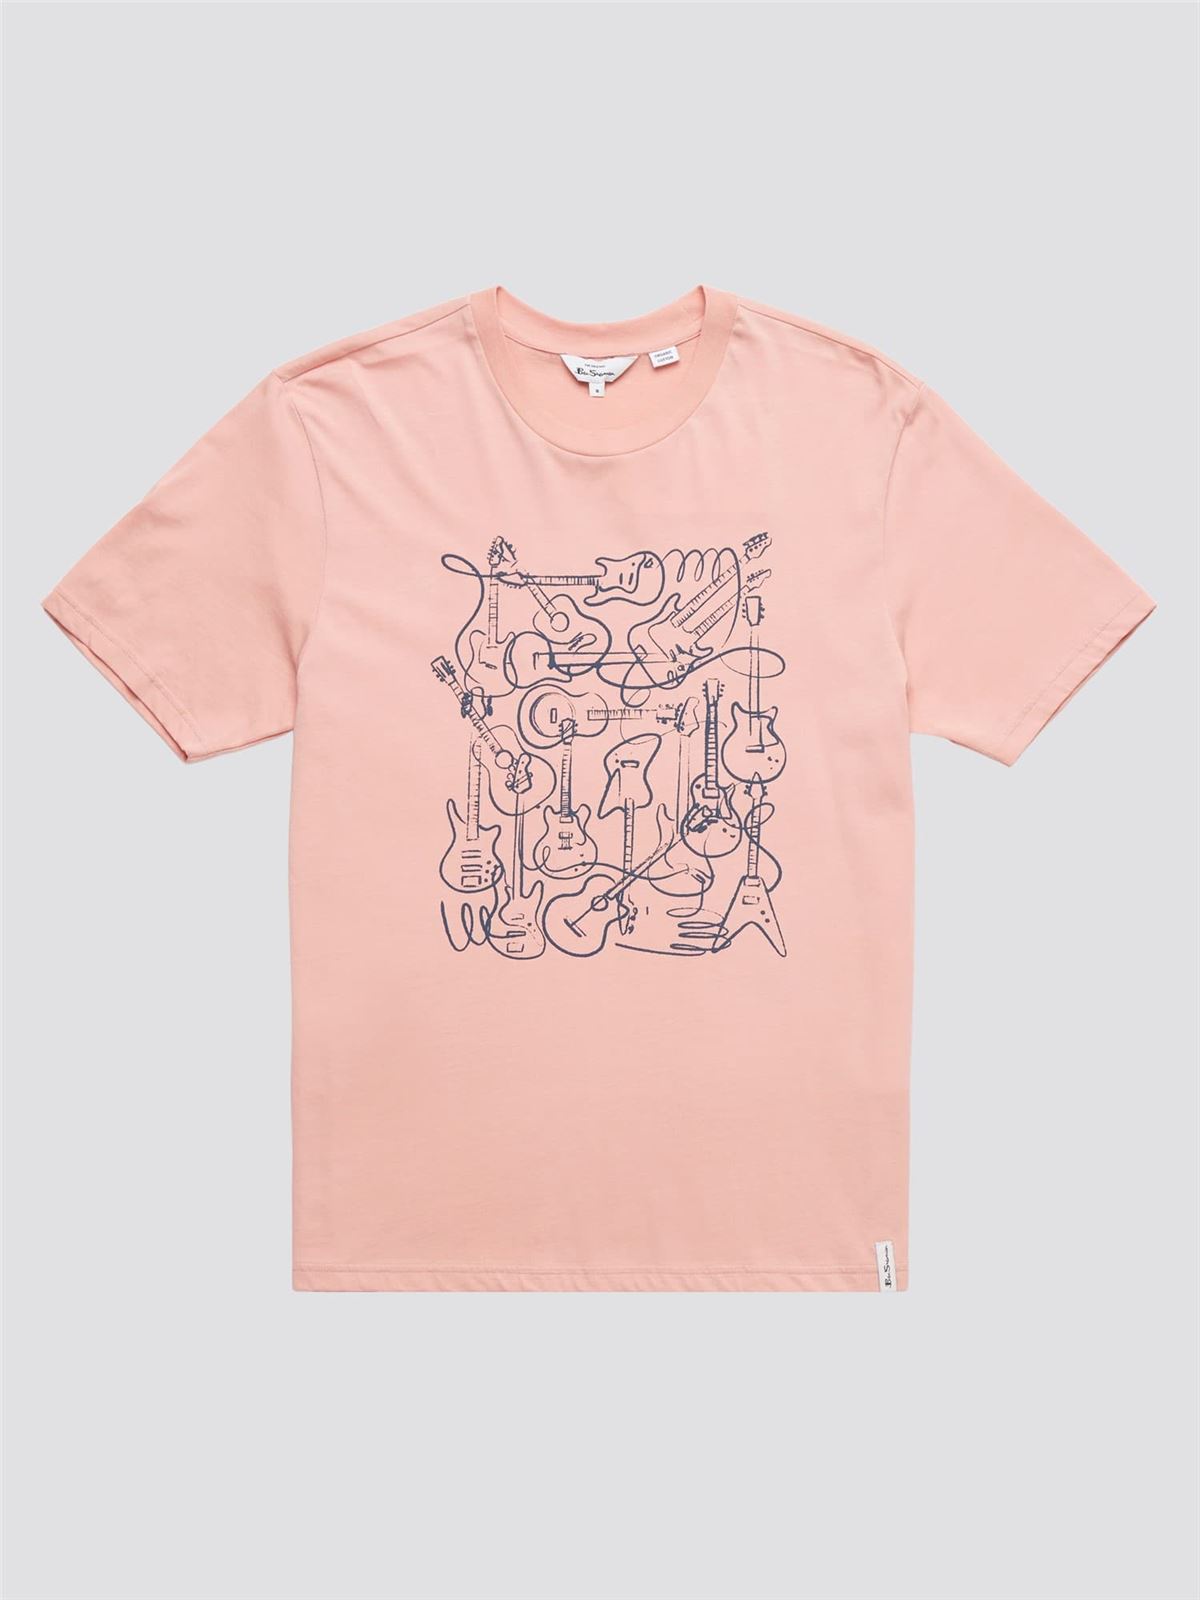 Camiseta Ben Sherman 0071378 501 music madness light pink - Imagen 4